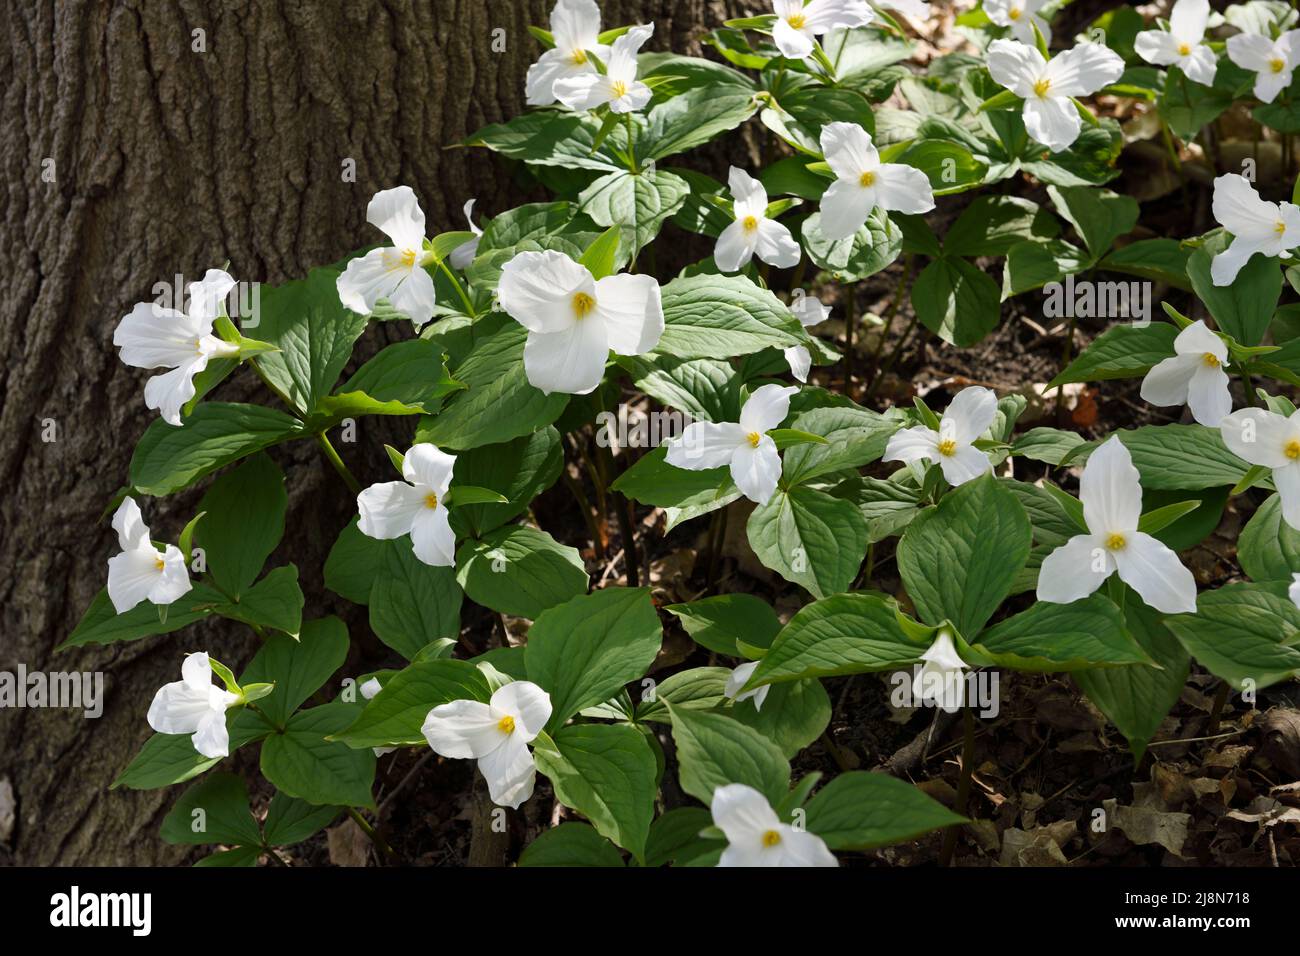 Stand de Trillium flores blancas silvestres primavera en el suelo del bosque con un gran tronco de árbol Foto de stock